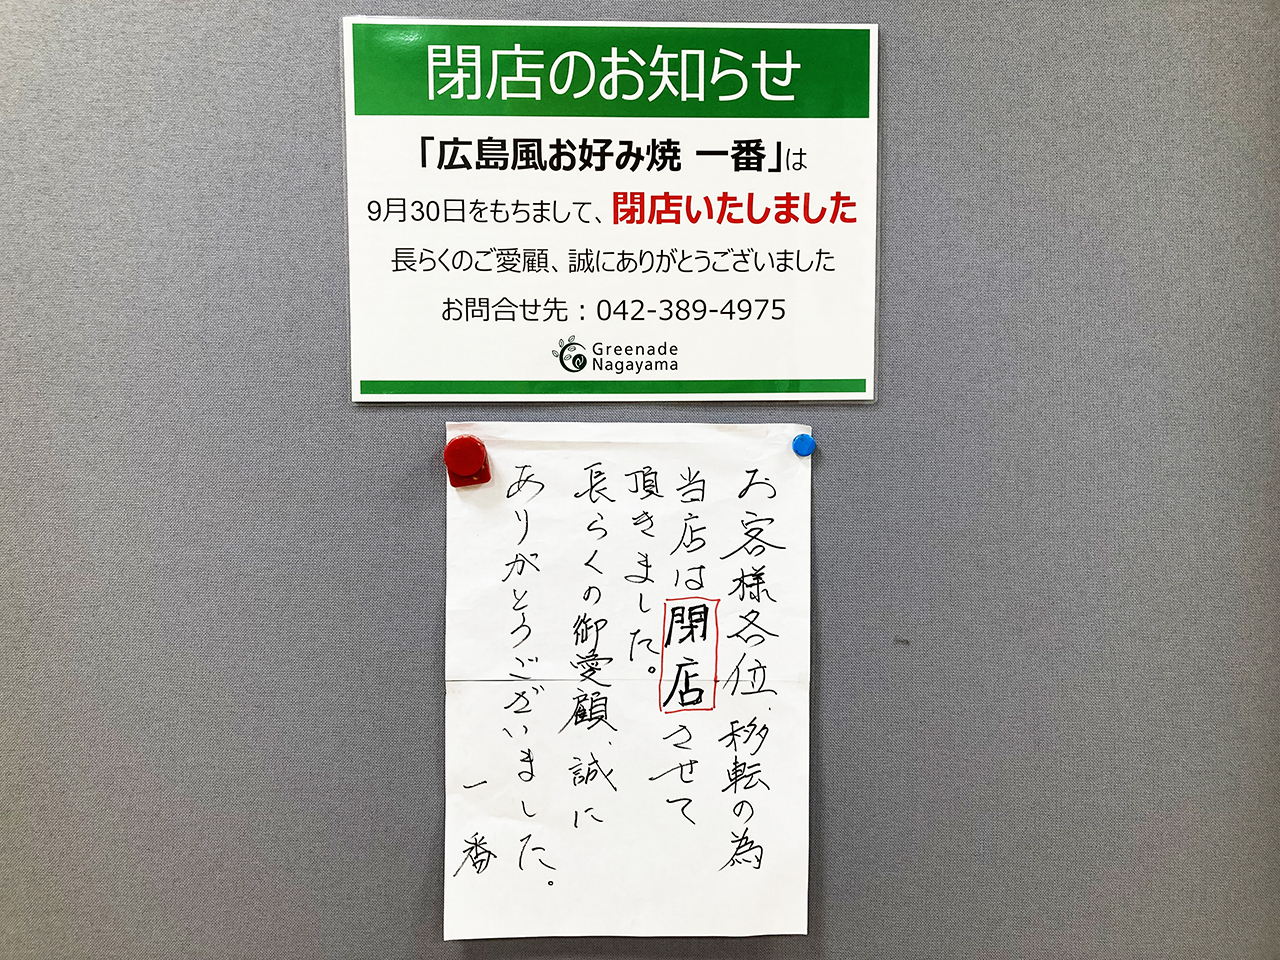 グリナード永山の4階 広島風お好み焼き「一番」が9月30日(金)をもって閉店しました